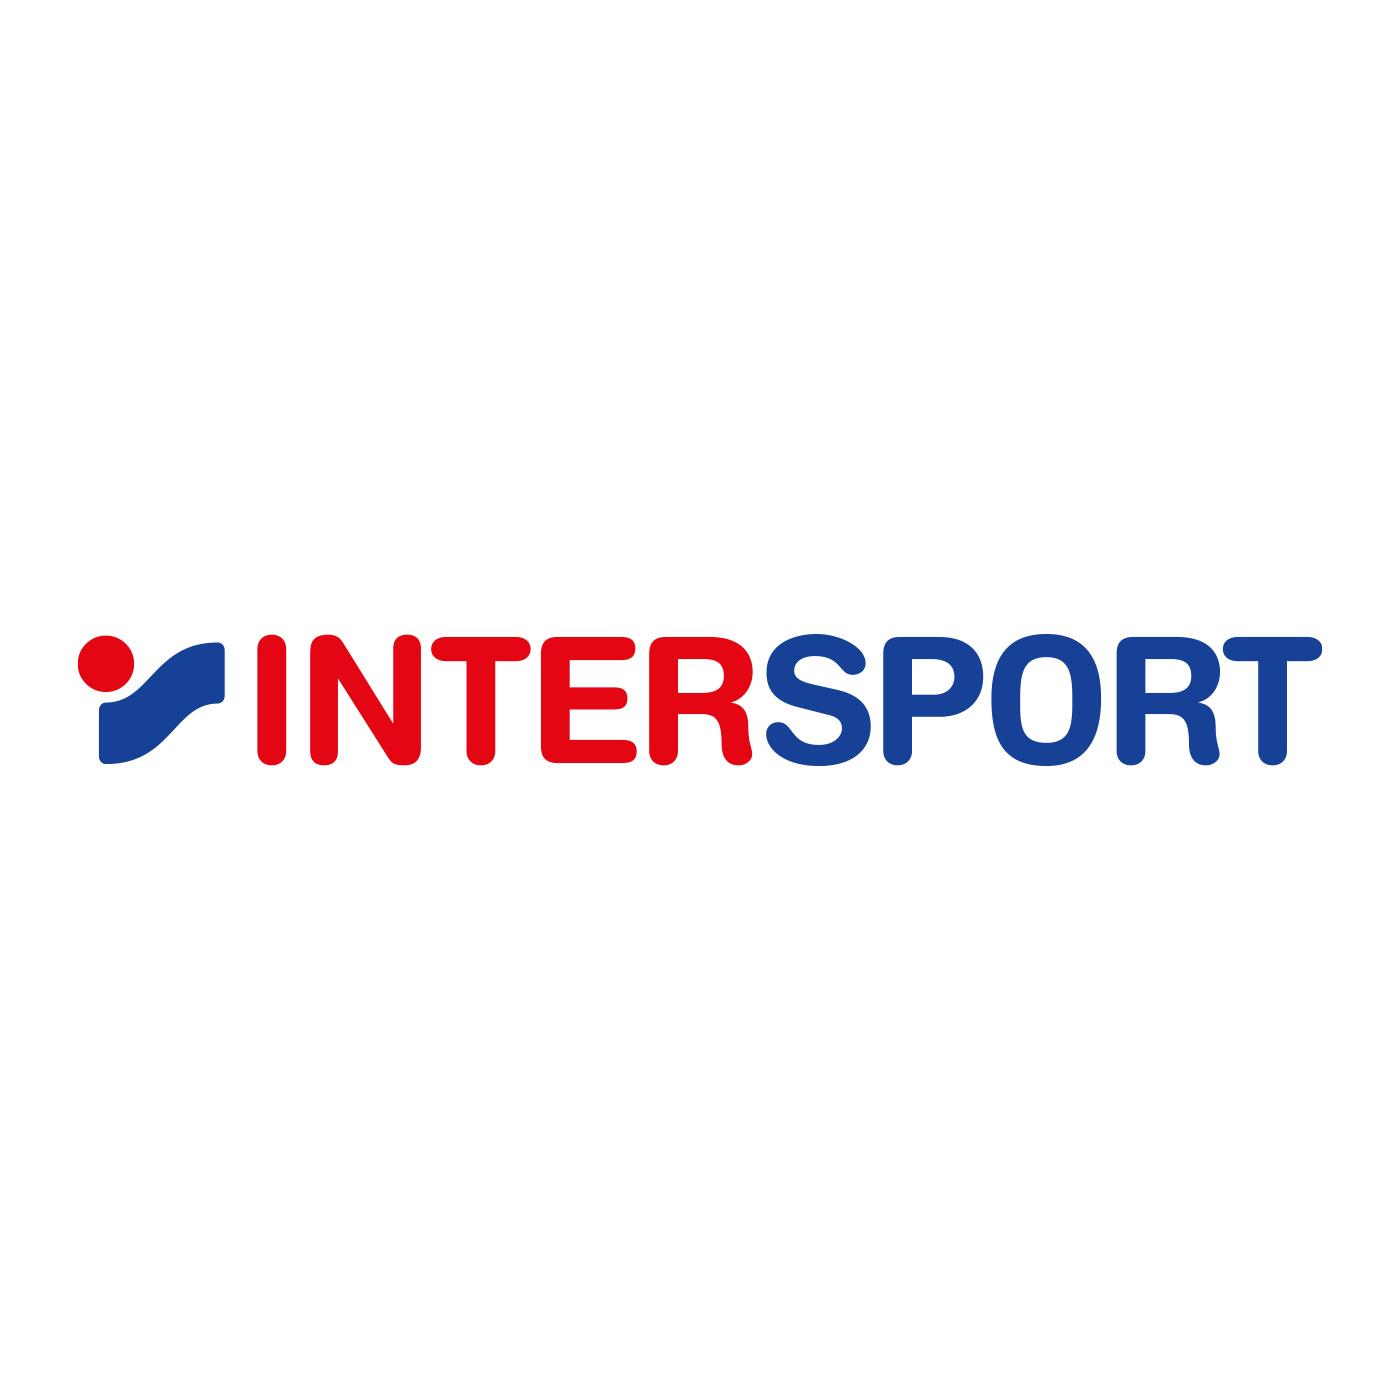 Intersport storia